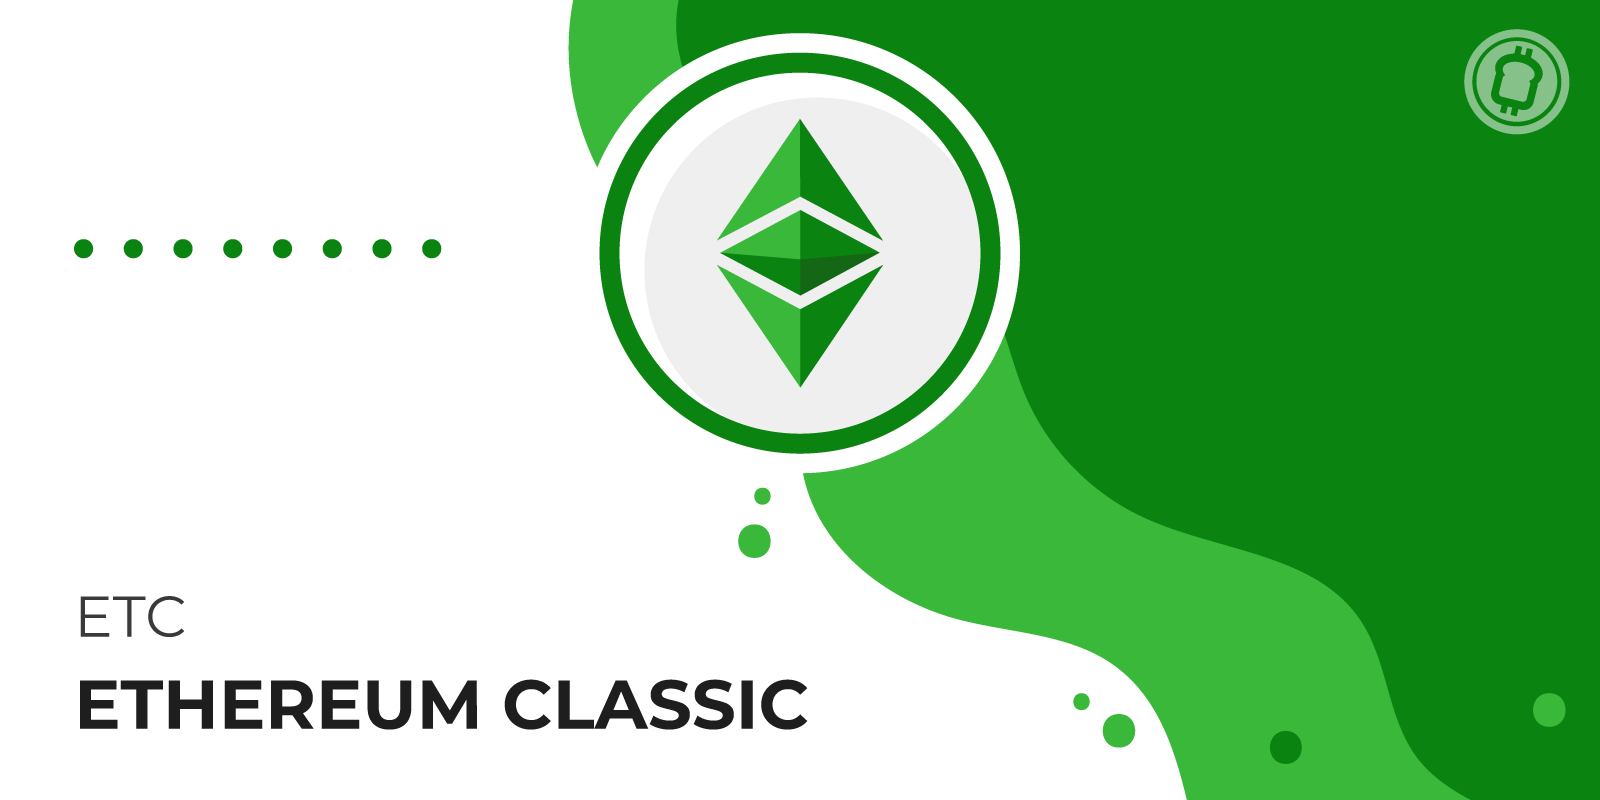 Qu'est-ce que Ethereum Classic (ETC) ? Description du fork d'Ethereum